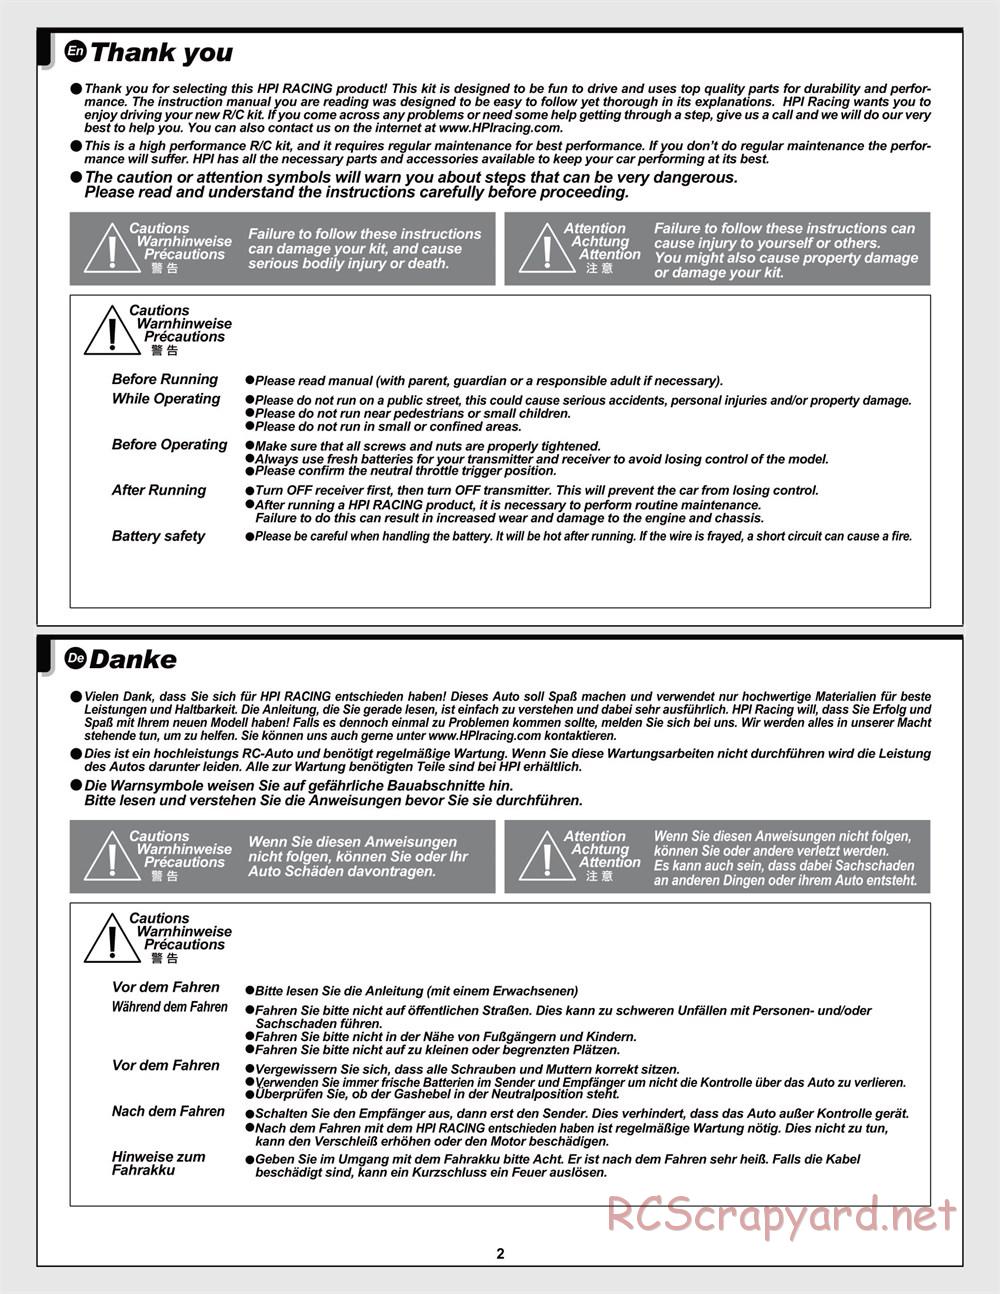 HPI - Jumpshot MT V2 - Manual - Page 2